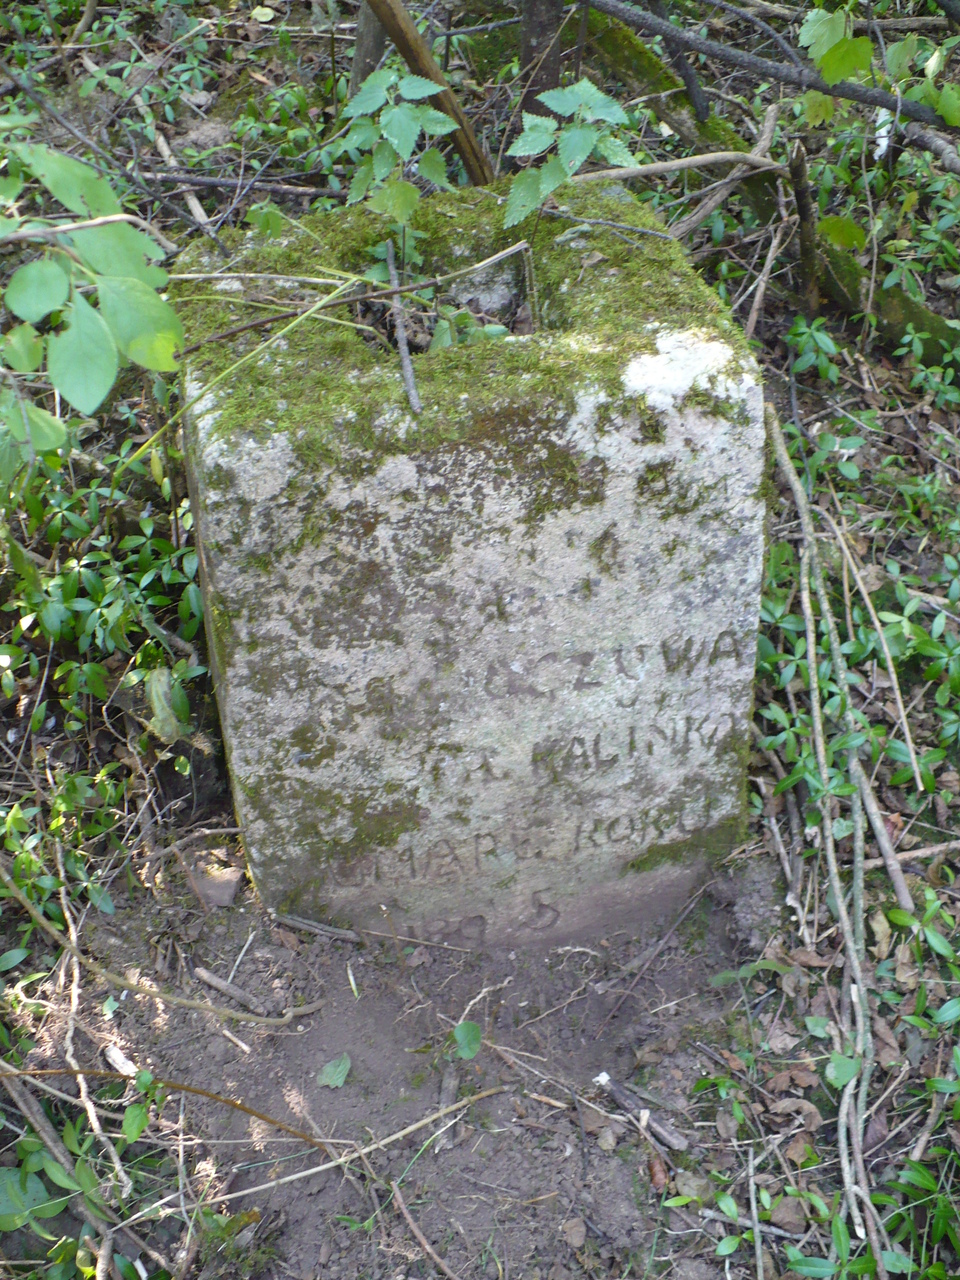 Tombstone of Michał Kalinka, Czerwonogród (Nyrkiv) cemetery, state from 2005